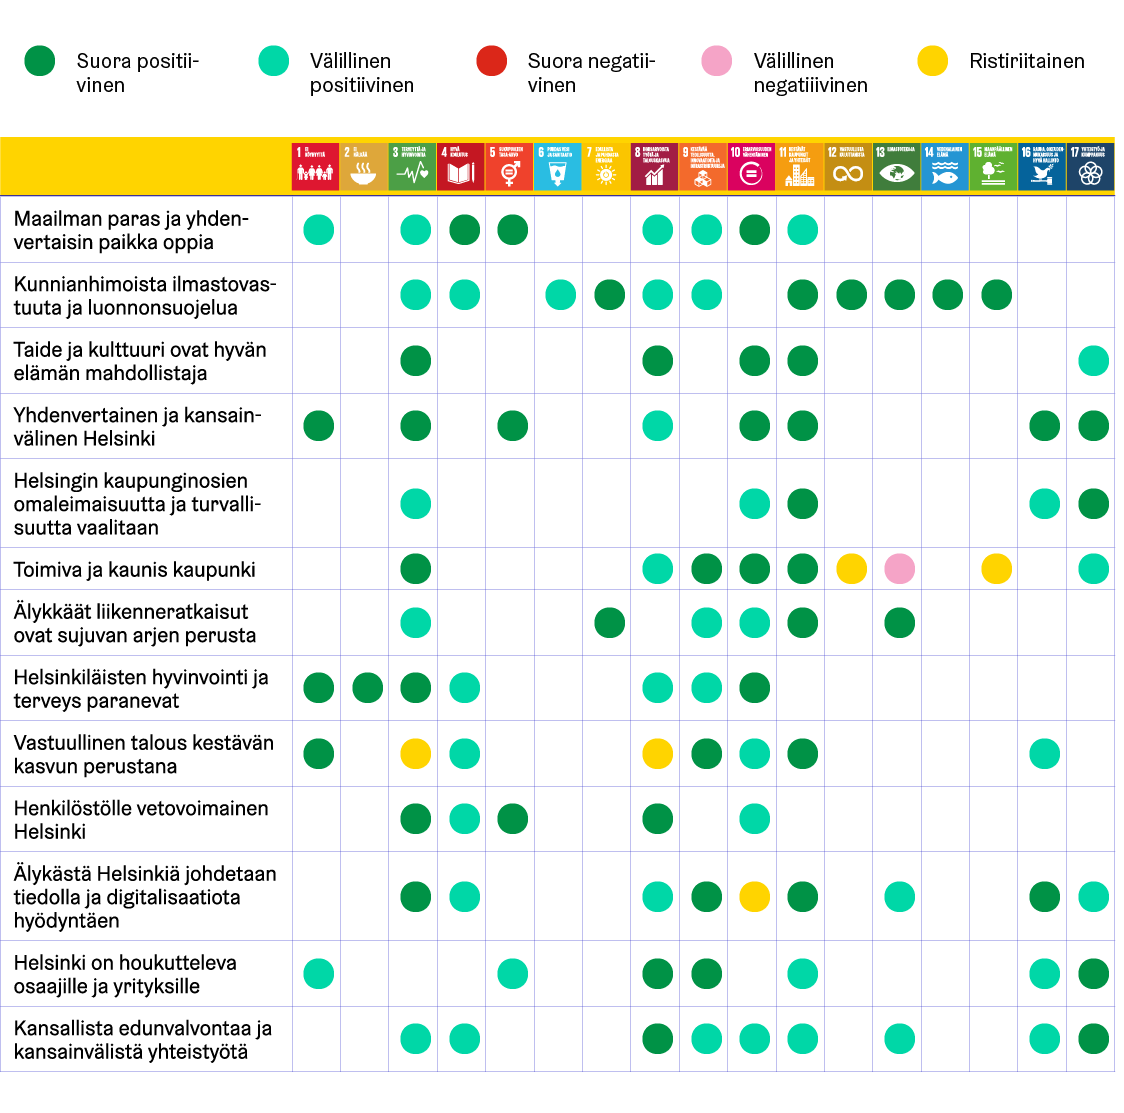 Kaavio kuvaa Helsingin kaupunkistrategian painopisteiden ja yksittäisten SDG-tavoitteiden suhdetta toisiinsa. Näiden suhde on määritelty vaihtoehdoilla suora positiivinen, välillinen positiivinen, suora negatiivinen, välillinen negatiivinen tai ristiriitainen.